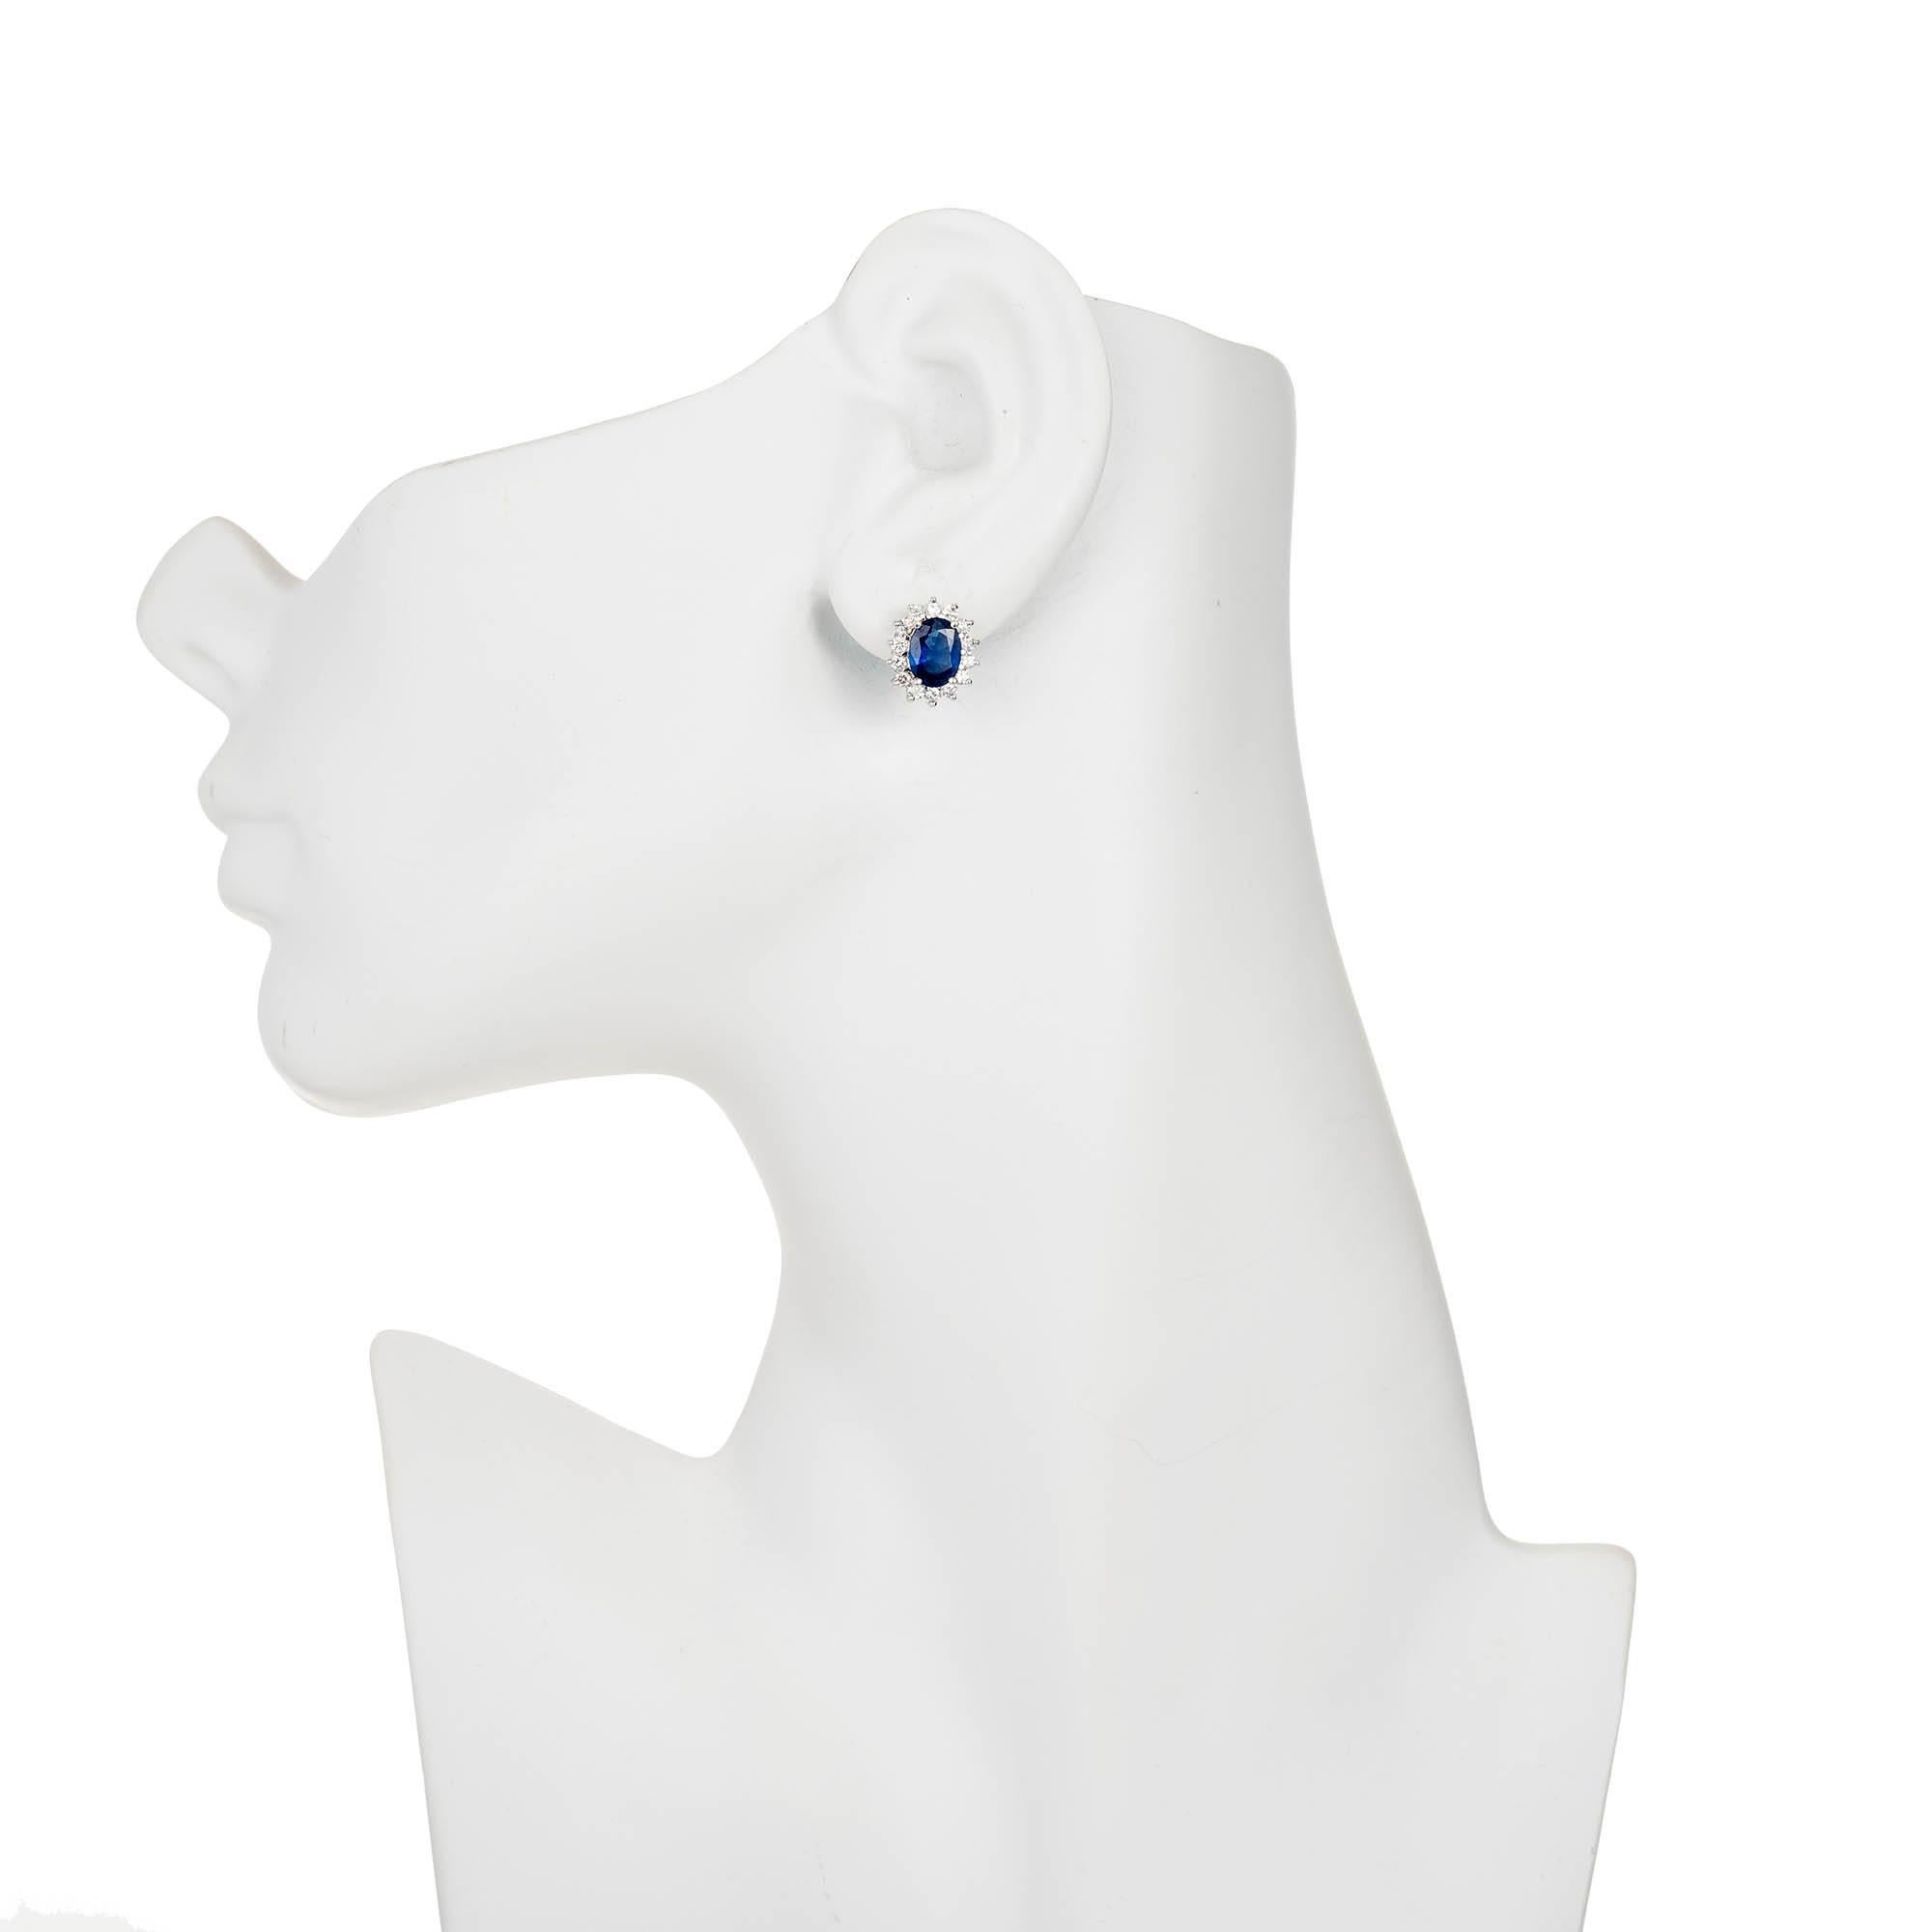 Oval Cut GIA Certified 3.10 Carat Cornflower Blue Sapphire Diamond Gold Stud Earrings